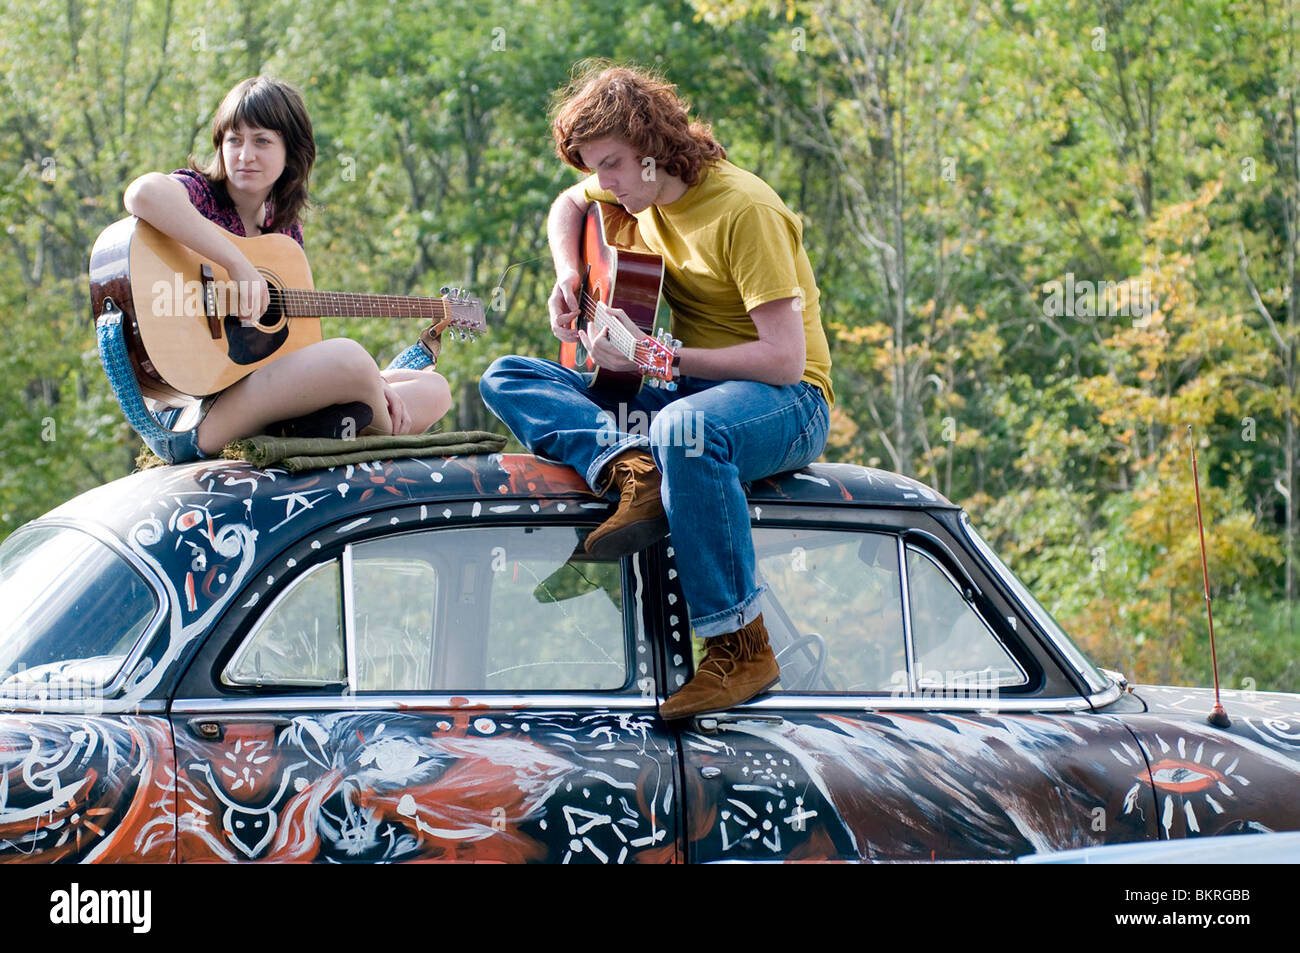 Taking Woodstock (2009)